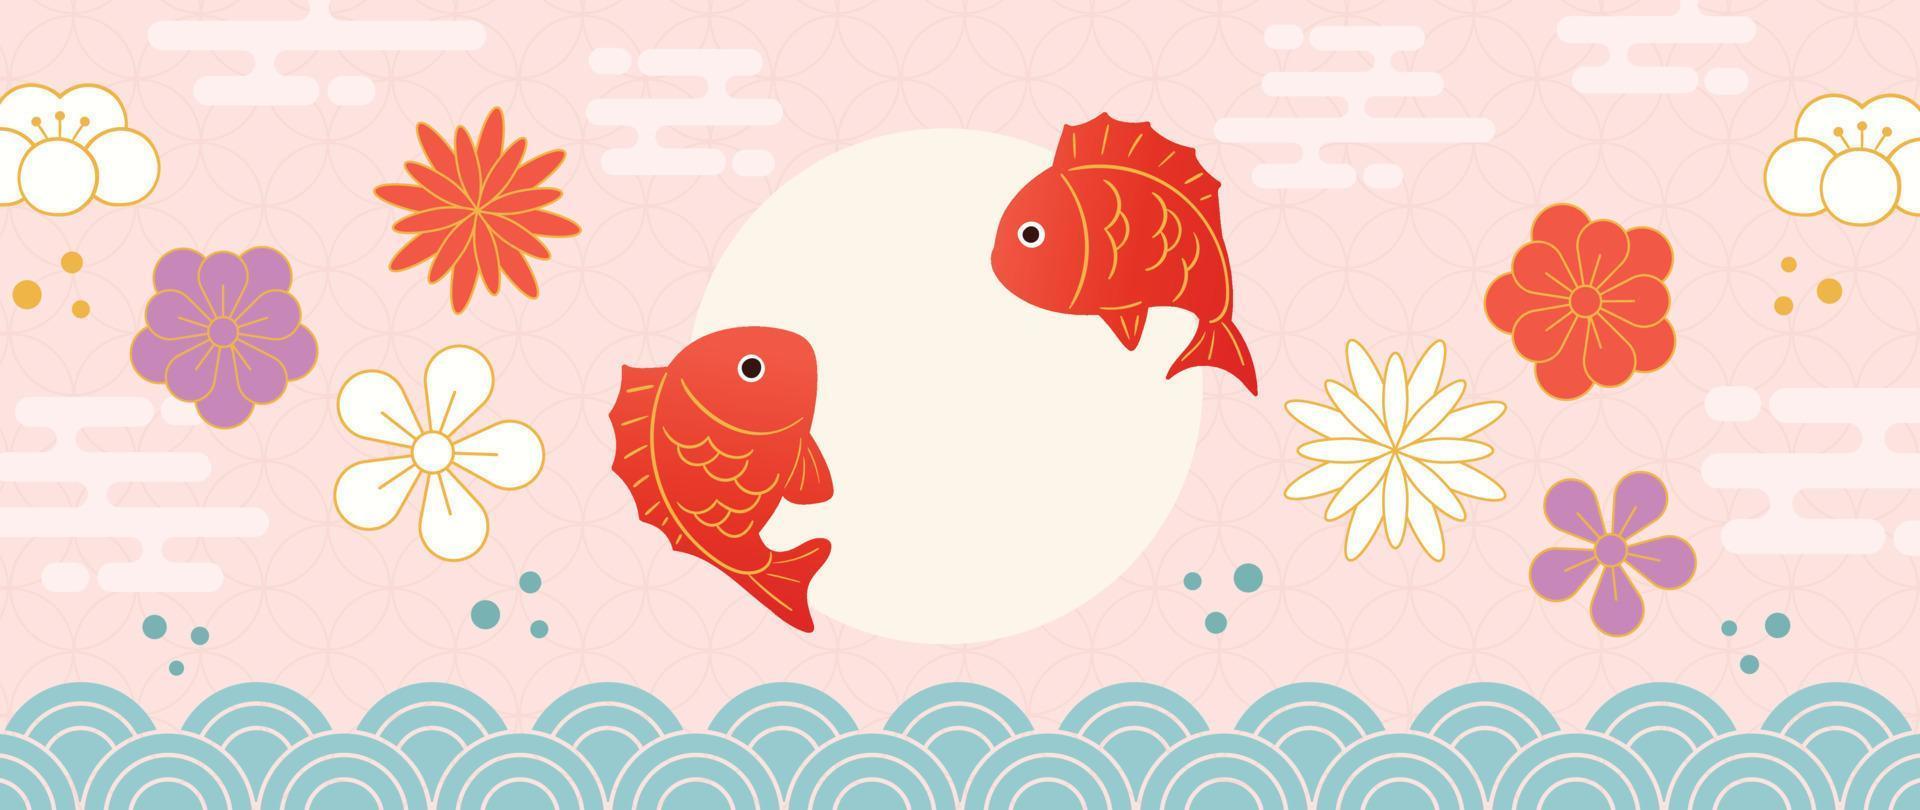 Ilustración de vector de fondo japonés. plantilla de decoración de feliz año nuevo en color pastel vibrante estilo japonés con peces dorados, flores y olas. diseño para tarjeta, papel pintado, afiche, pancarta.